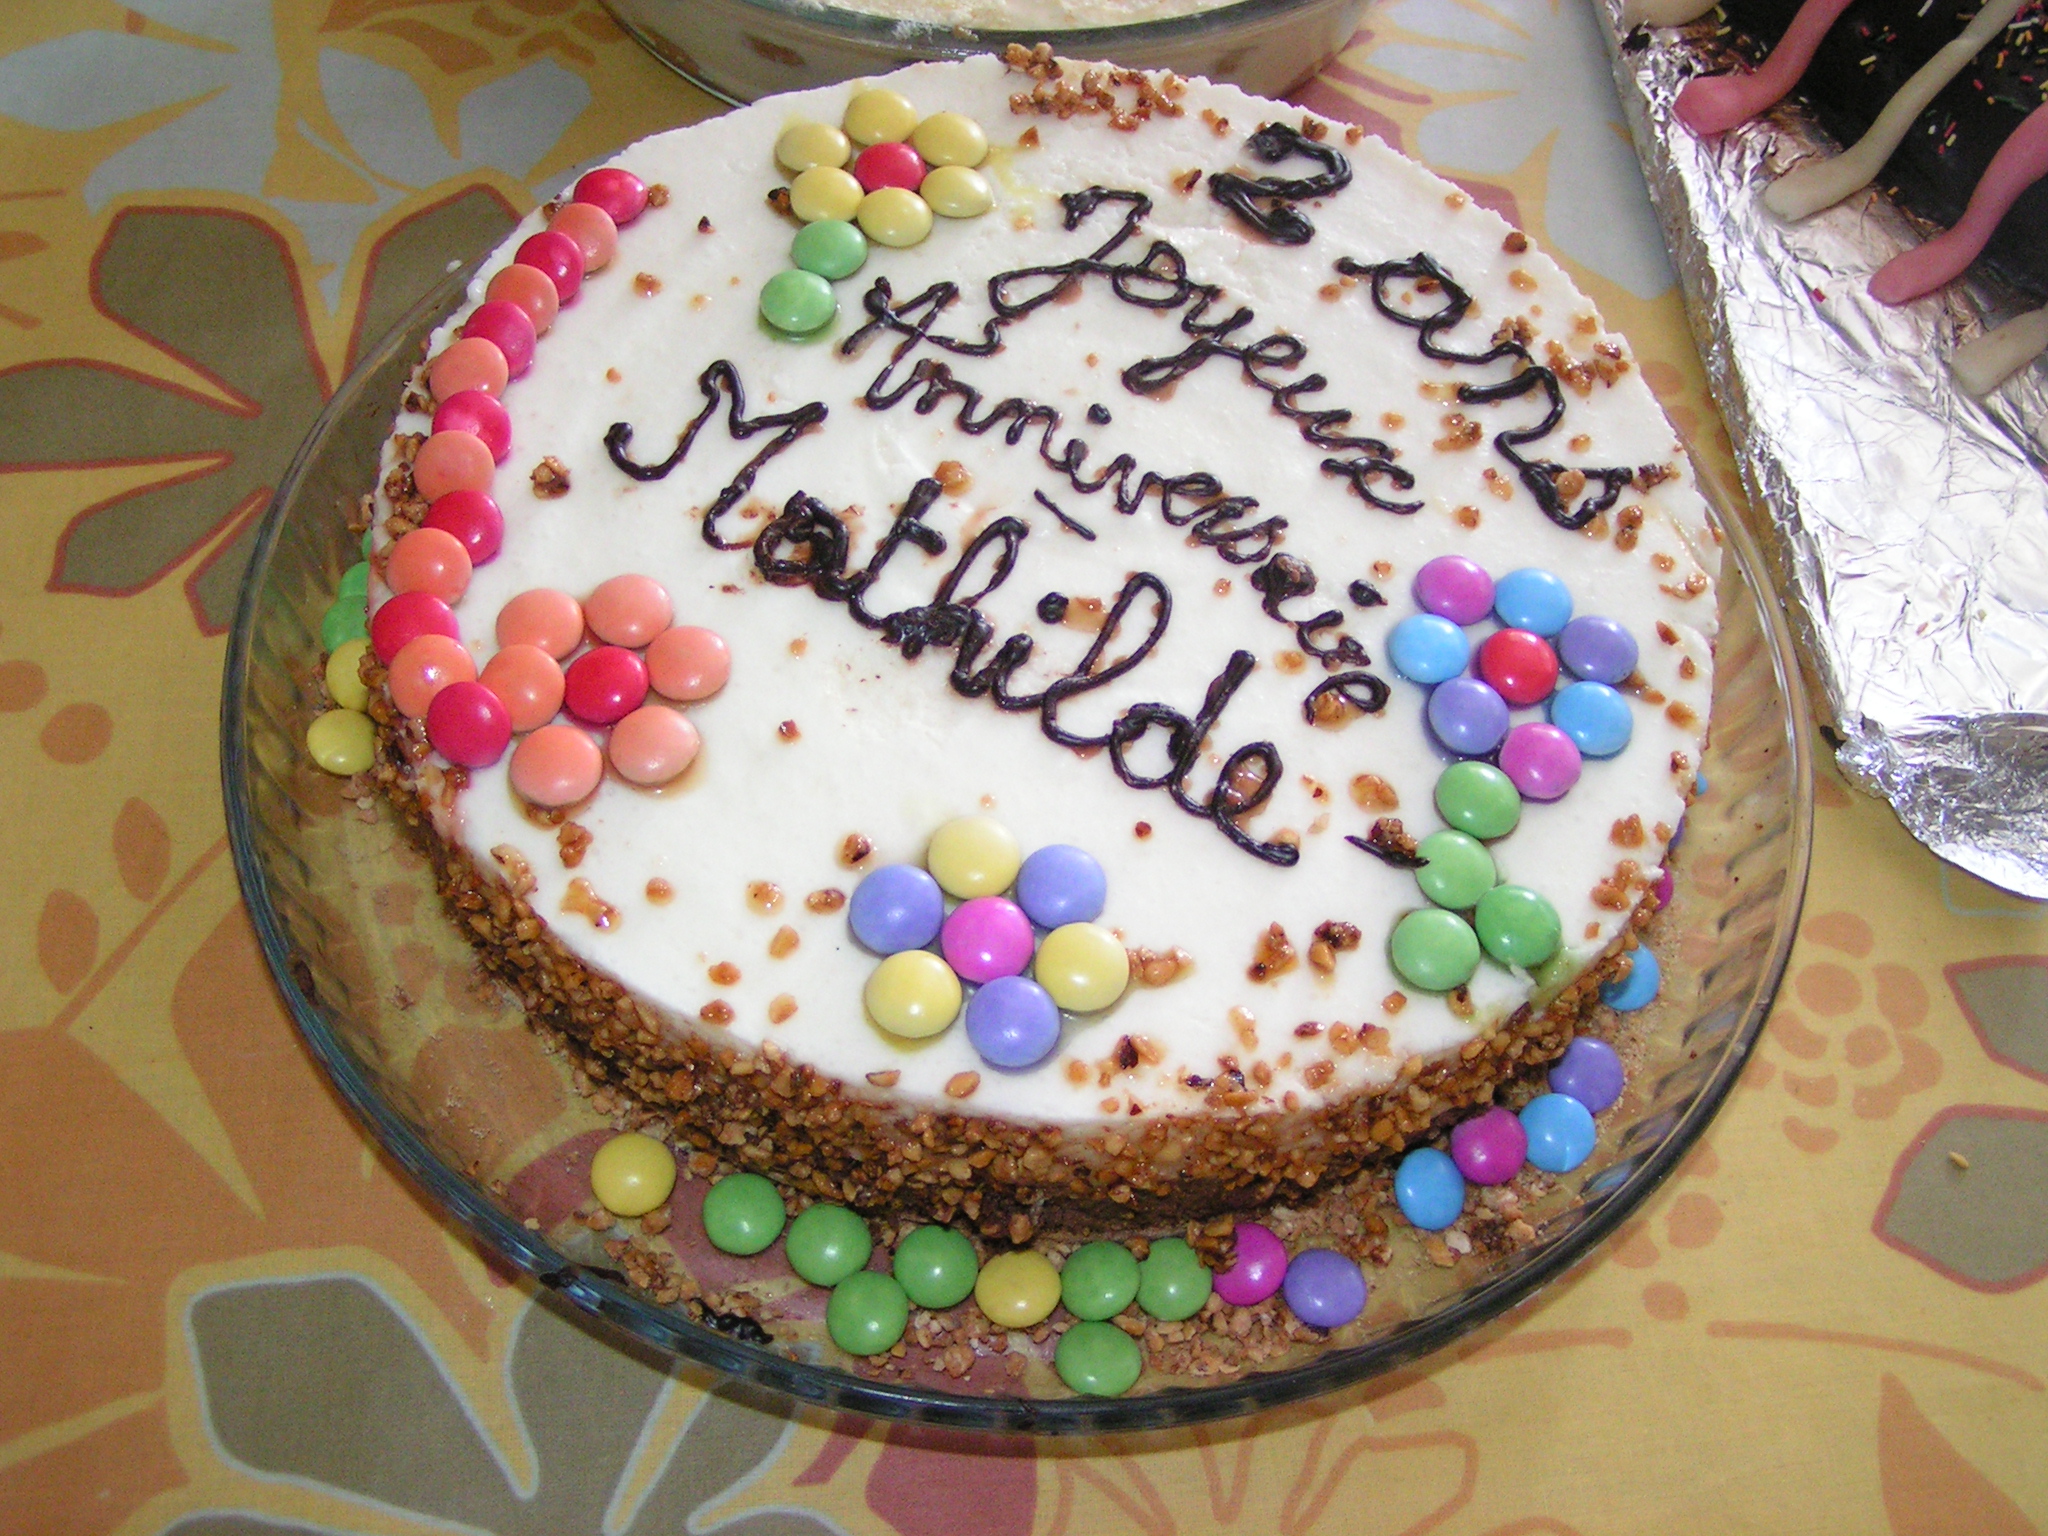 décoration de gateaux d anniversaire - 10 idées de déco pour vos gâteaux d'anniversaire Canal Vie